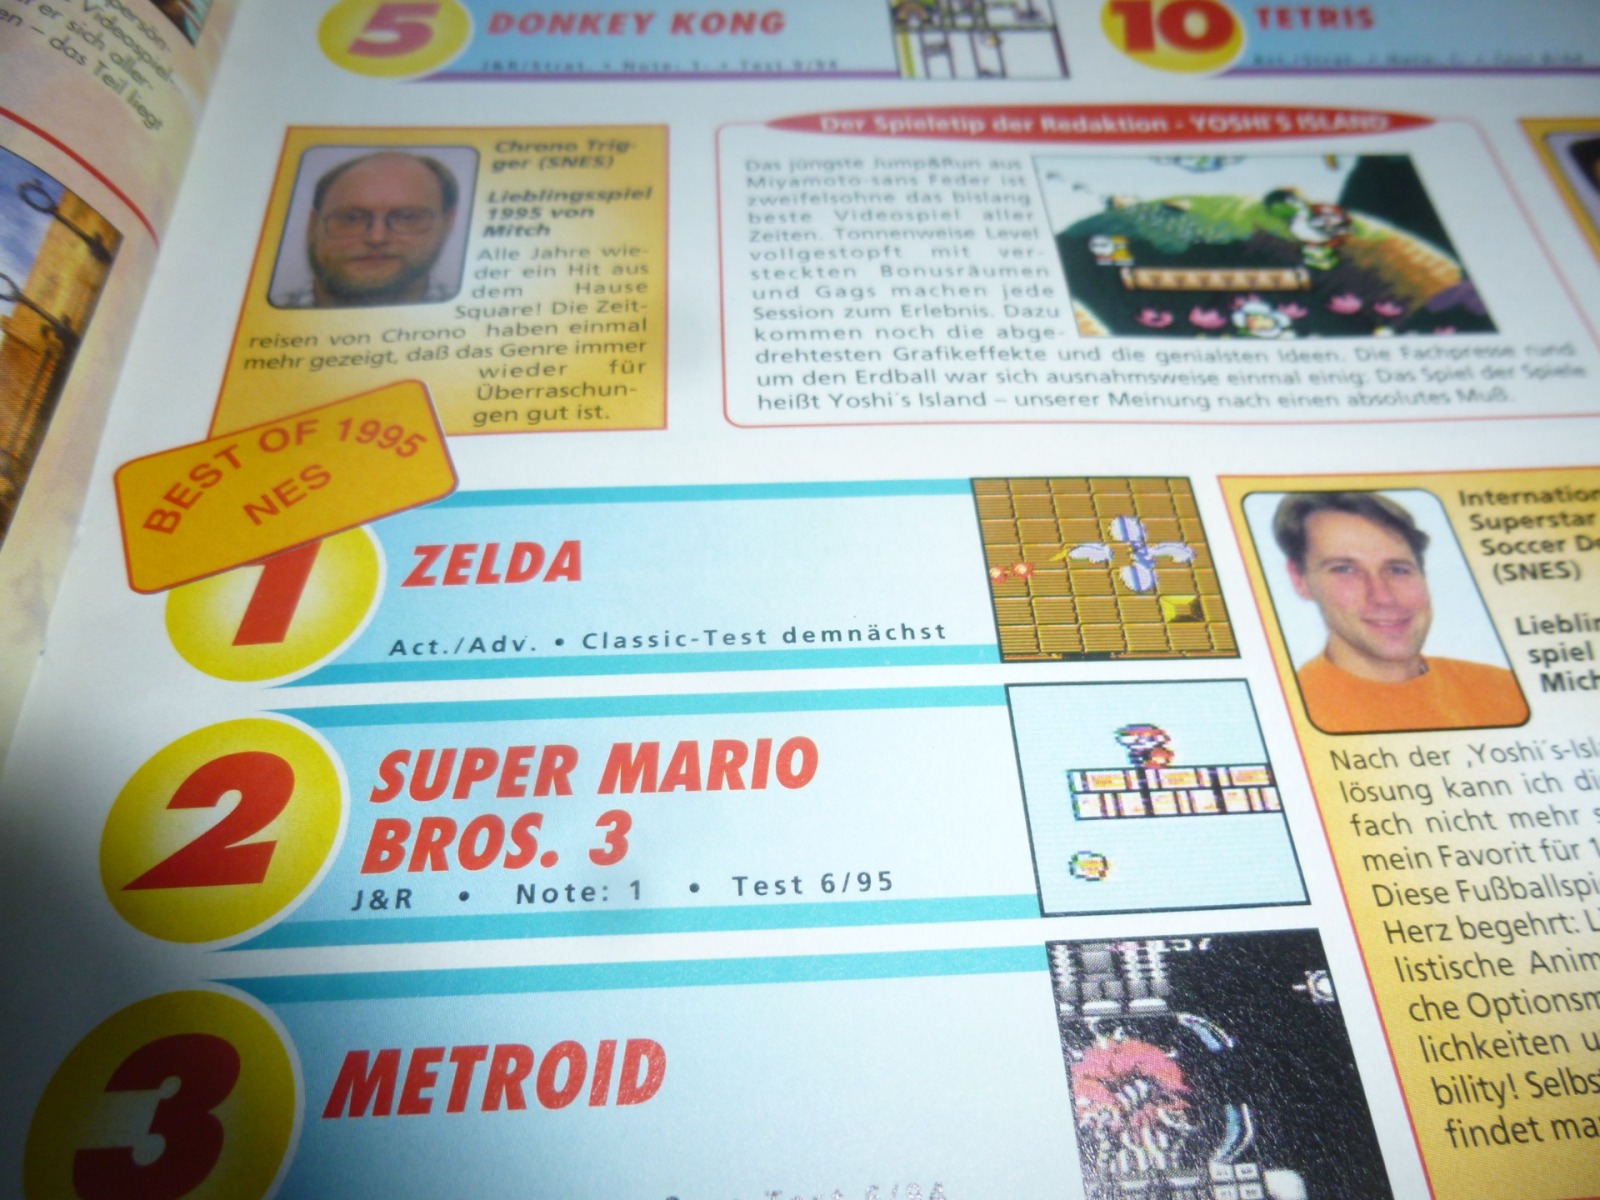 TOTAL Das unabhängige Magazin - 100% Nintendo - Ausgabe 2/96 1996 17